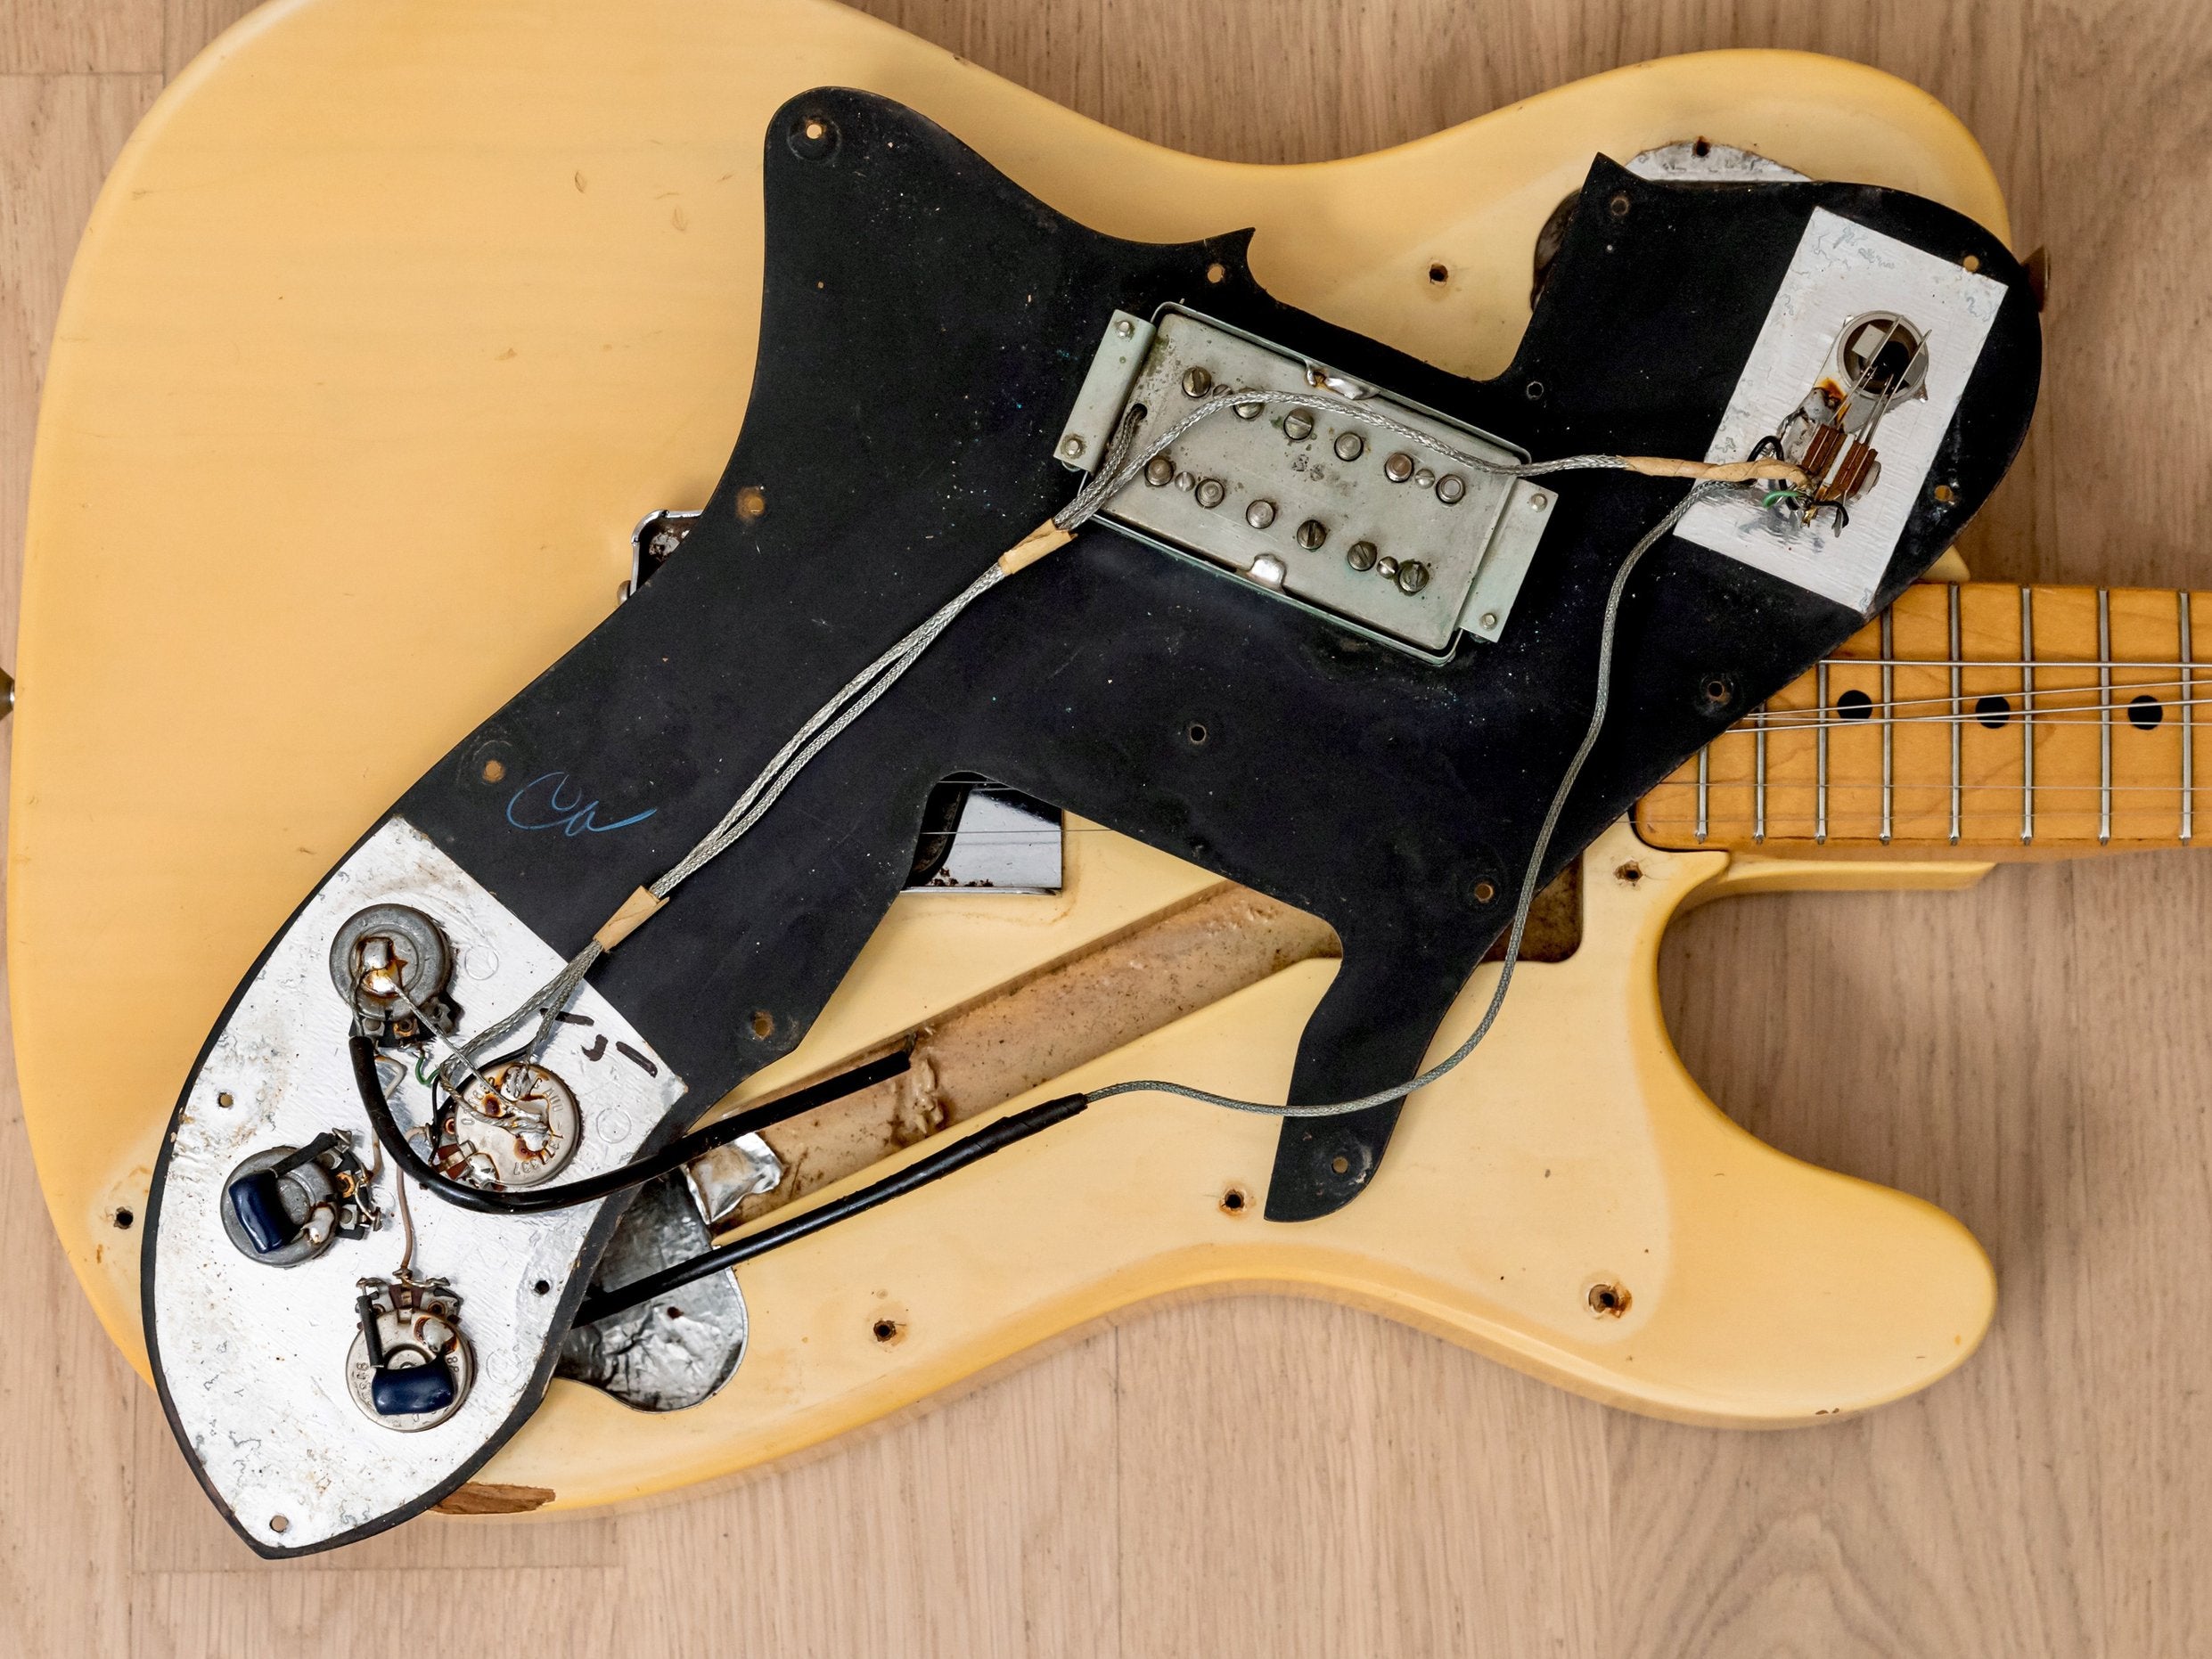 1973 Fender Telecaster Custom Vintage Guitar Blonde w/ Case, Wide Range